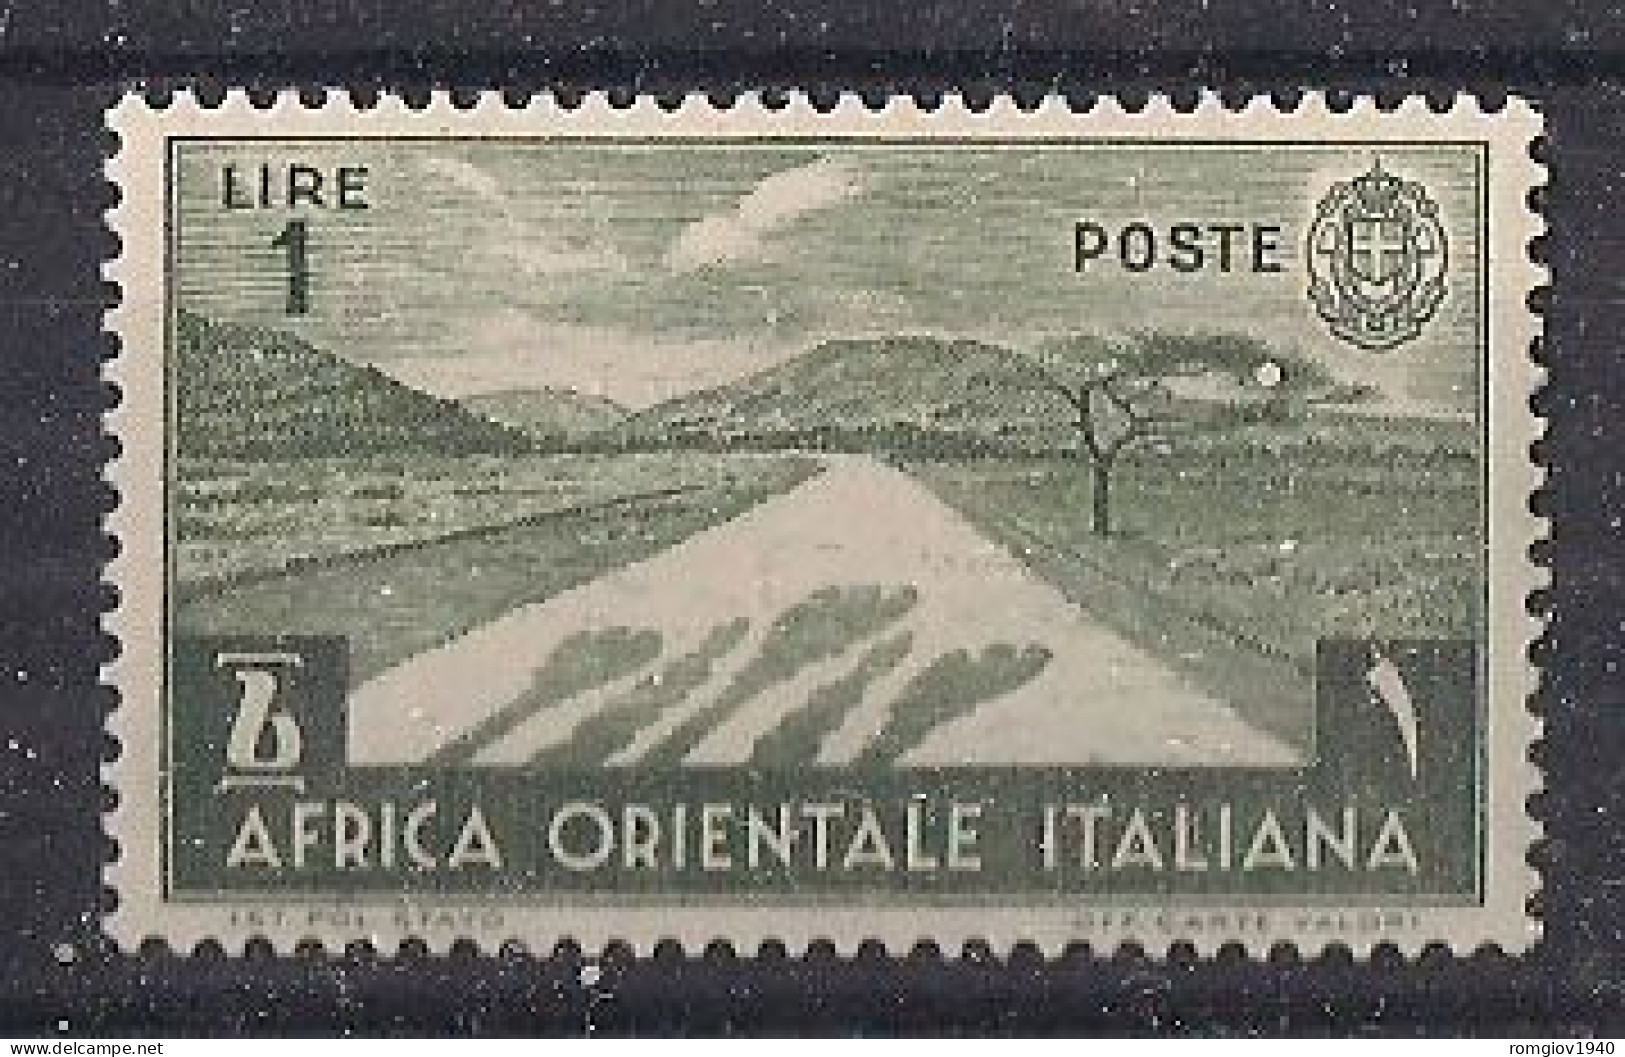 COLONIA ITALIANA  A.O.I. 1938 SOGGETTI VARI SASS. 12  MNH XF - Italian Eastern Africa